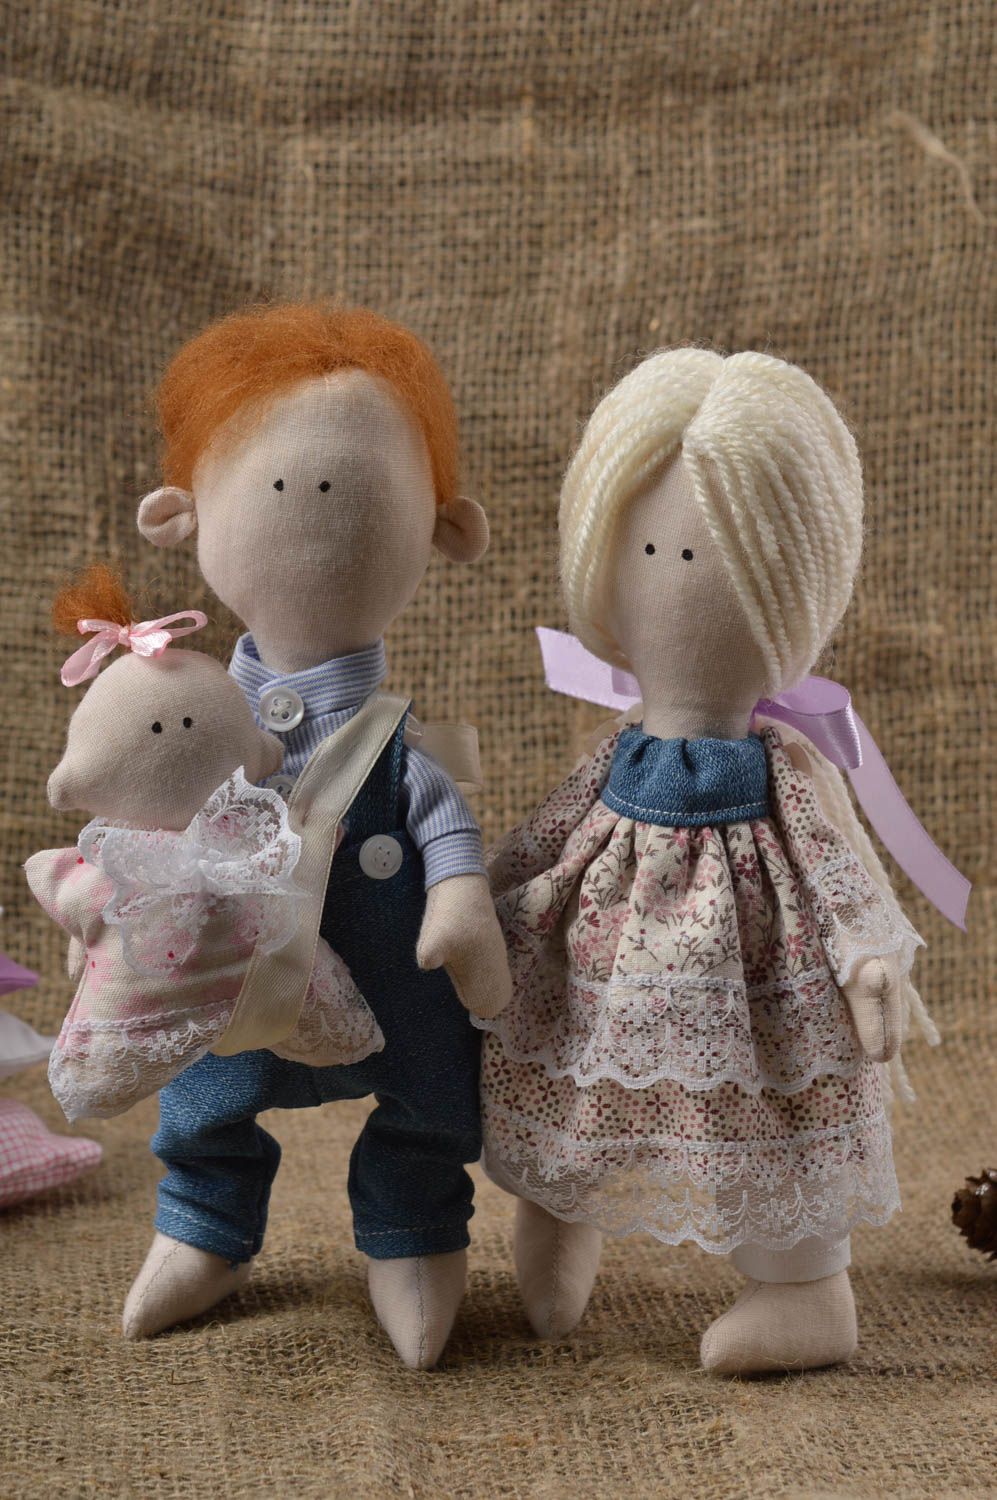 Handmade doll set of dolls designer doll unusual gift for girl nursery decor photo 1